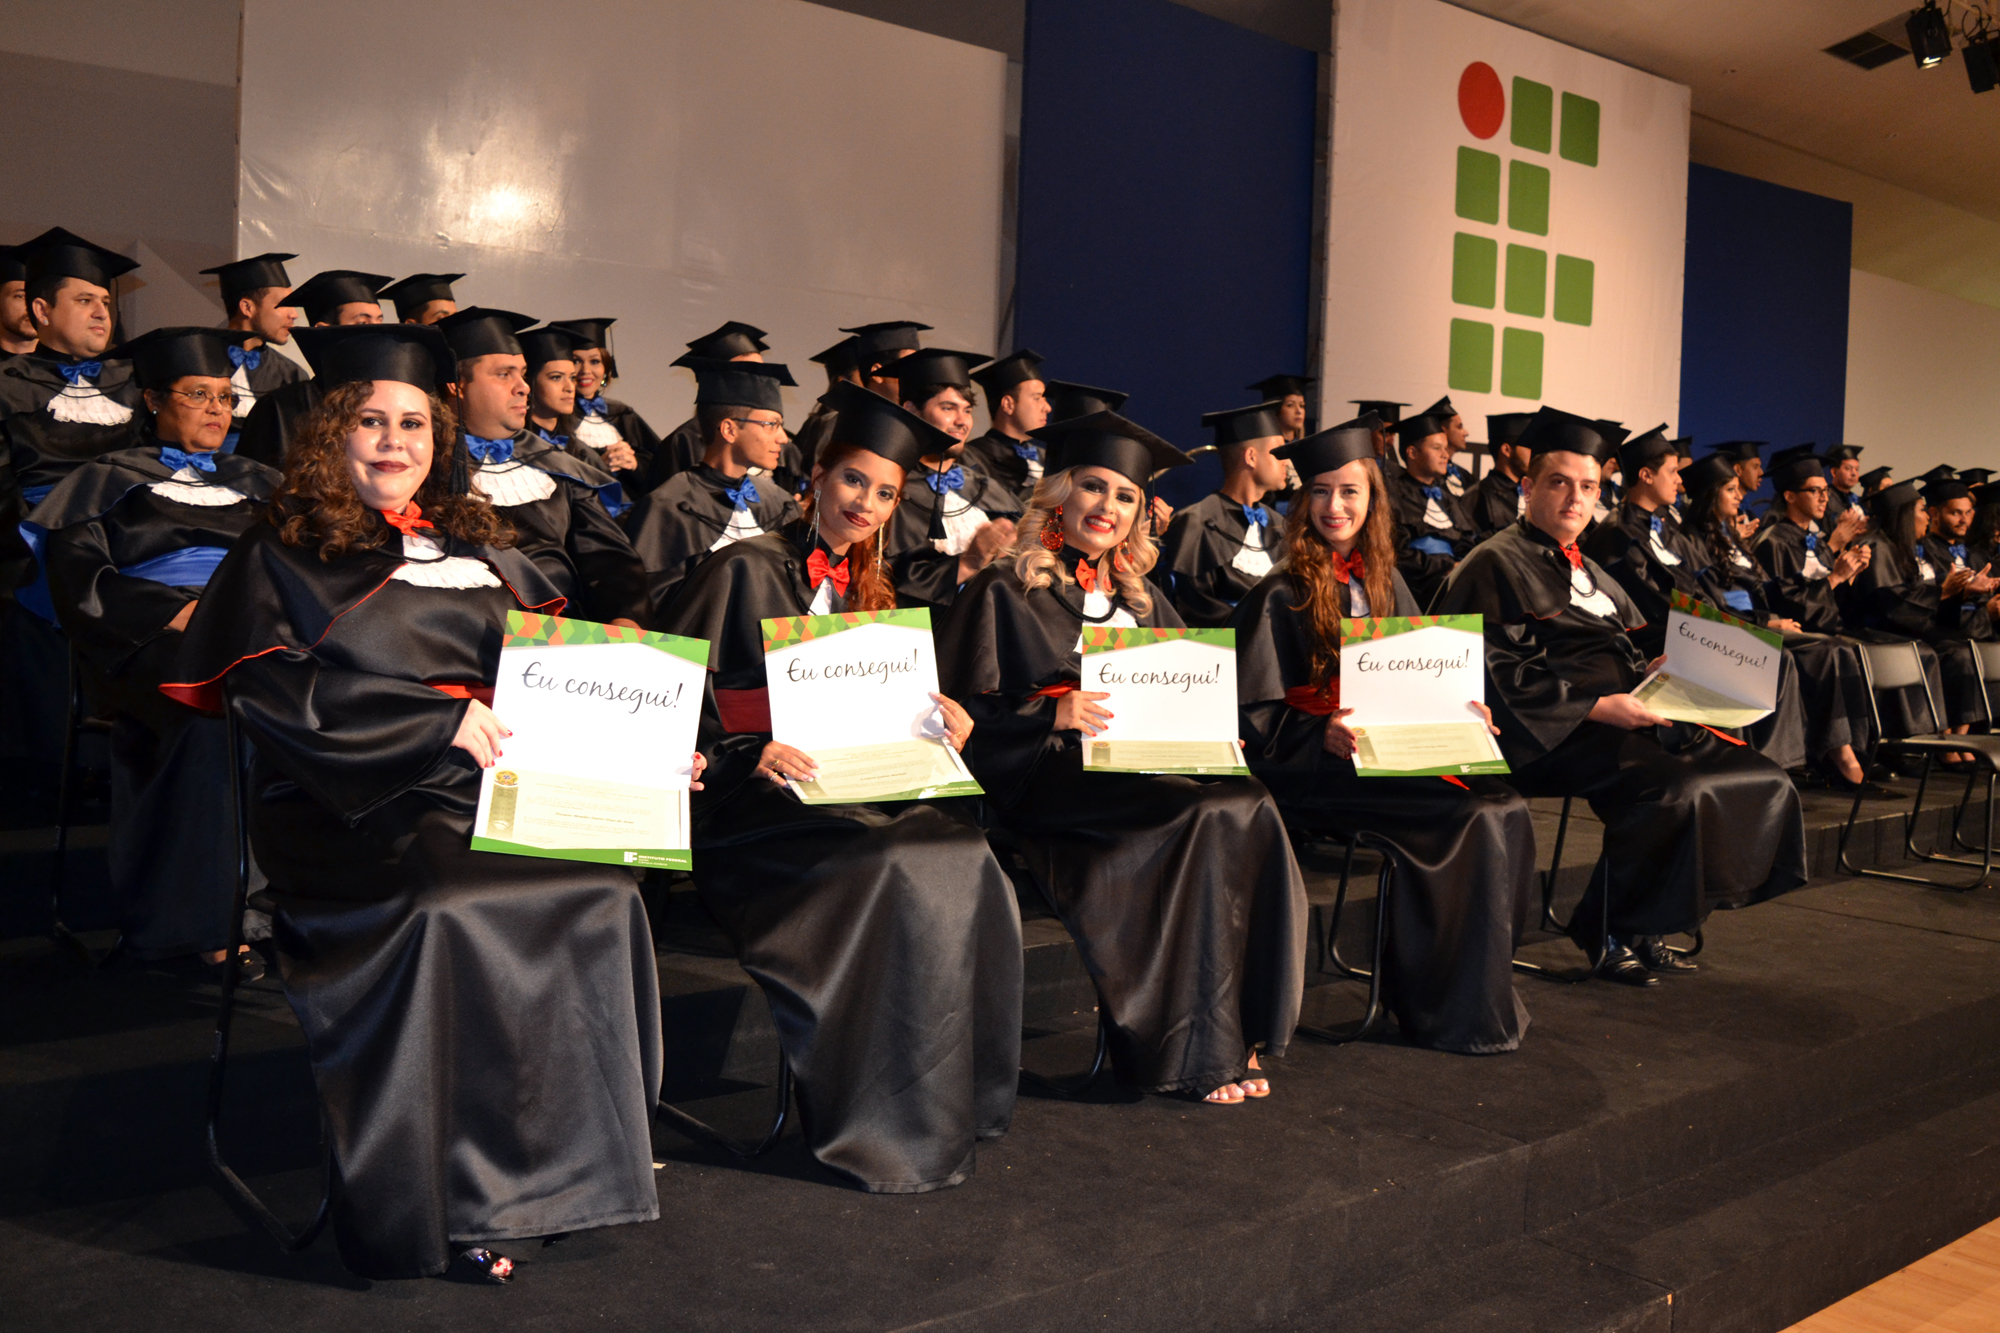 Formandos exibem diplomas recebidos durante a cerimônia de colação de grau.